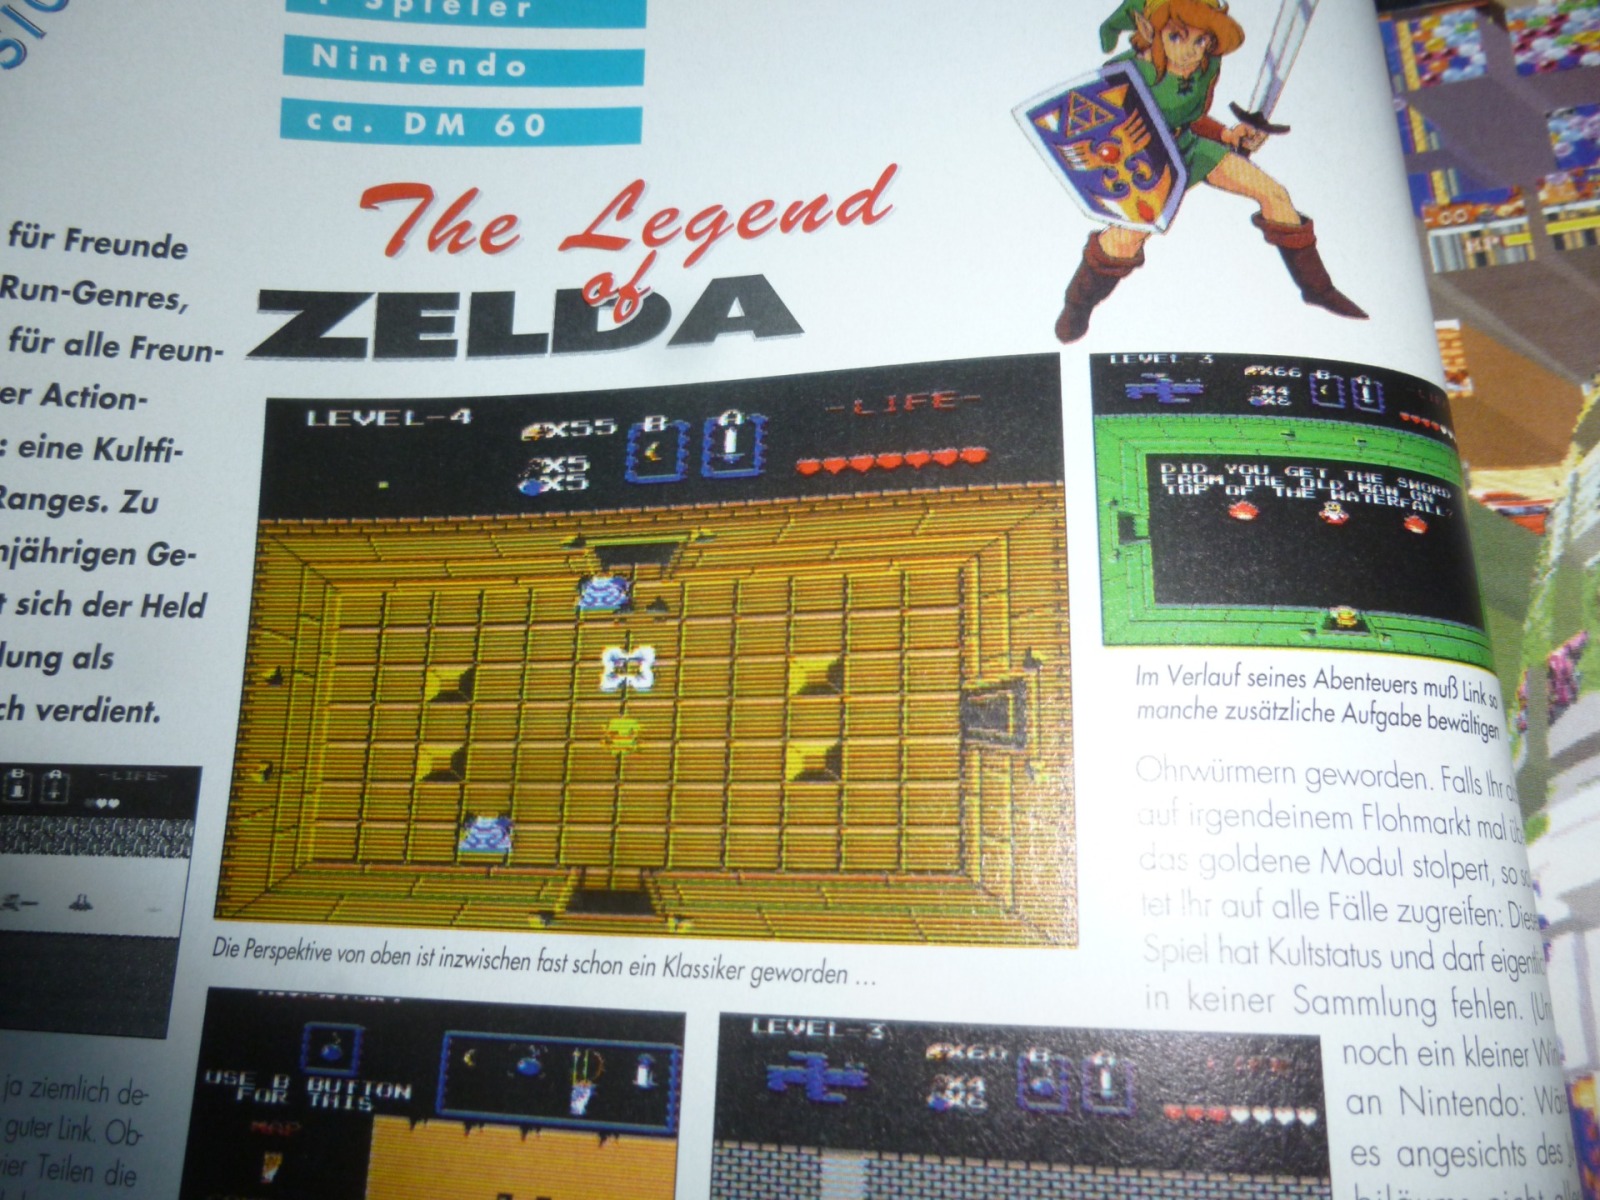 TOTAL Das unabhängige Magazin - 100 Nintendo - Ausgabe 3/96 1996 20